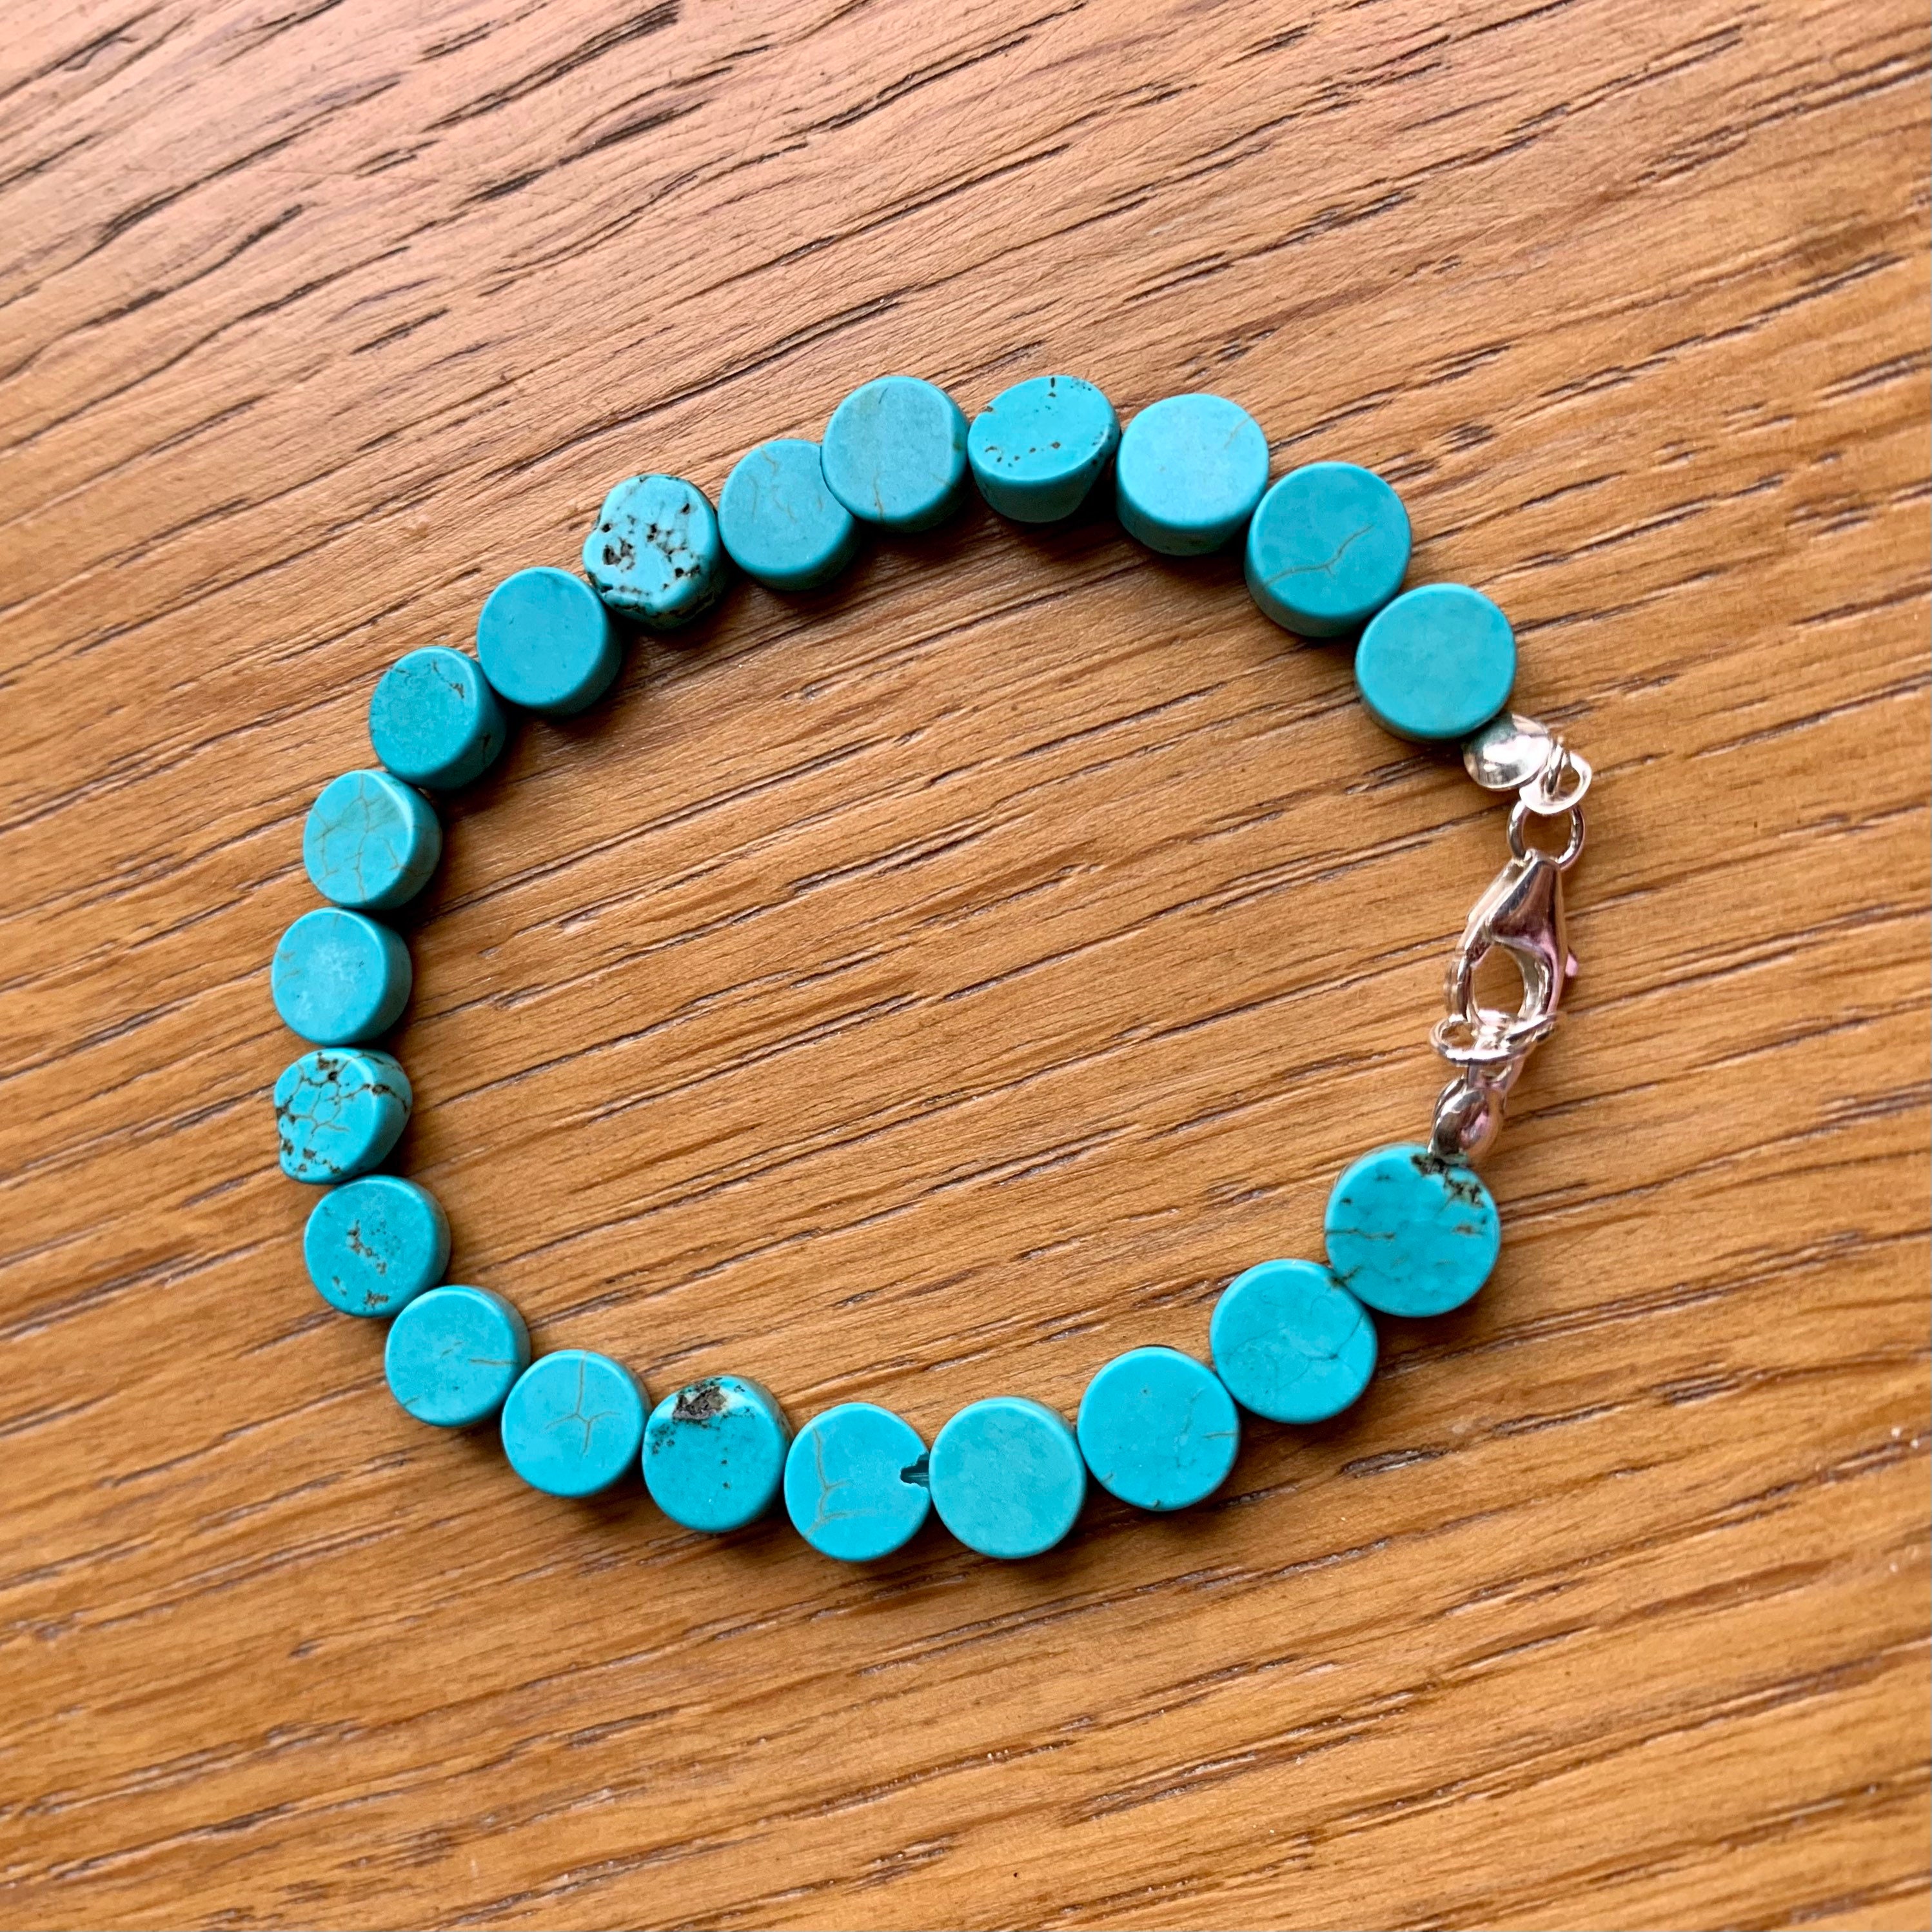 Turquoise Stone Beads Bracelet